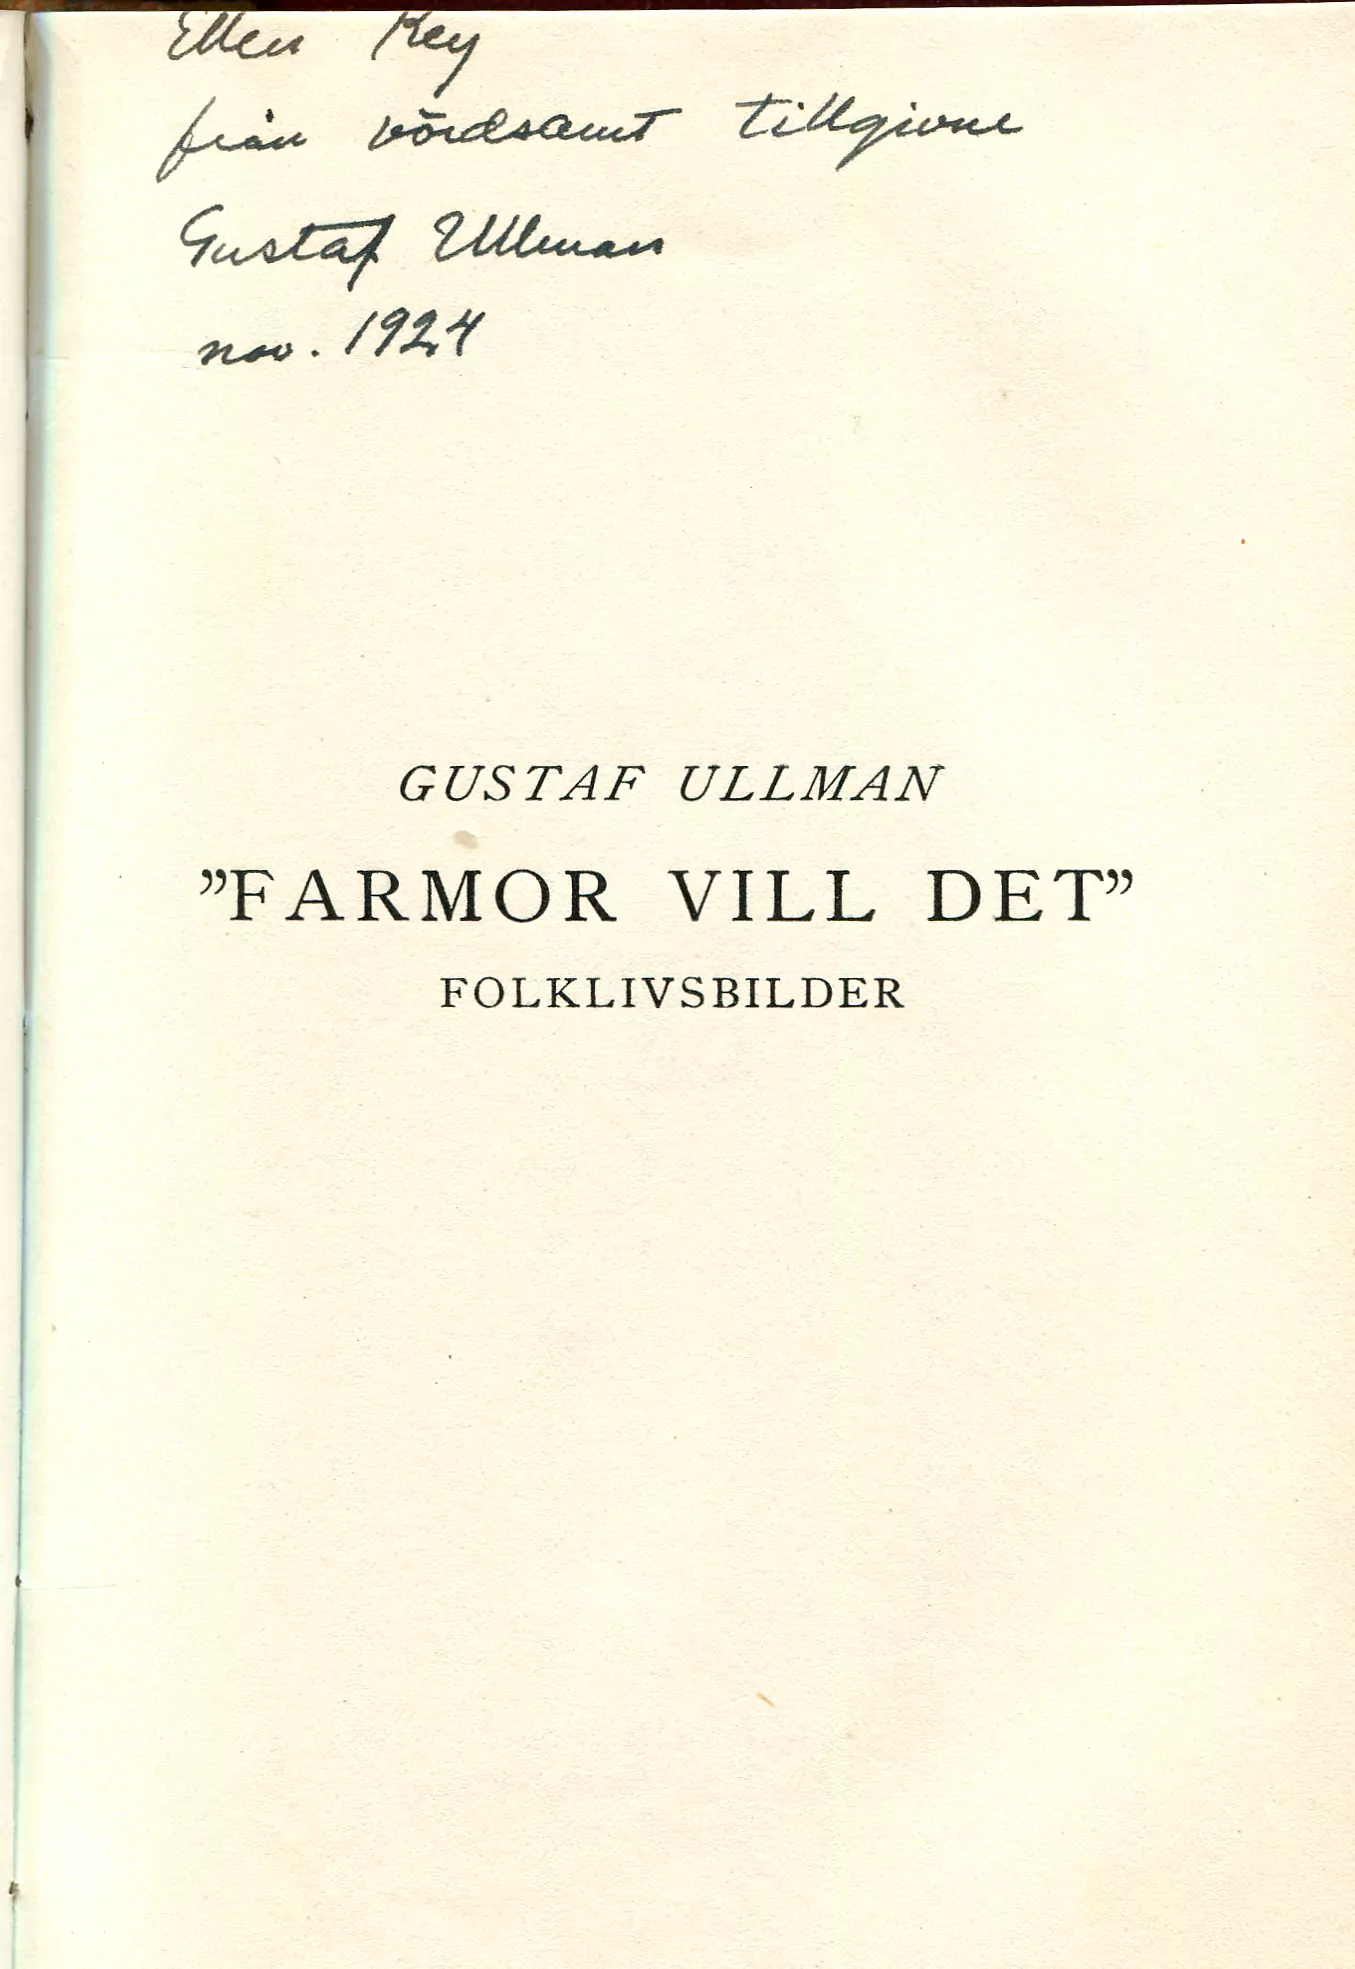 "Farmor vill det" , Stockholm 1924